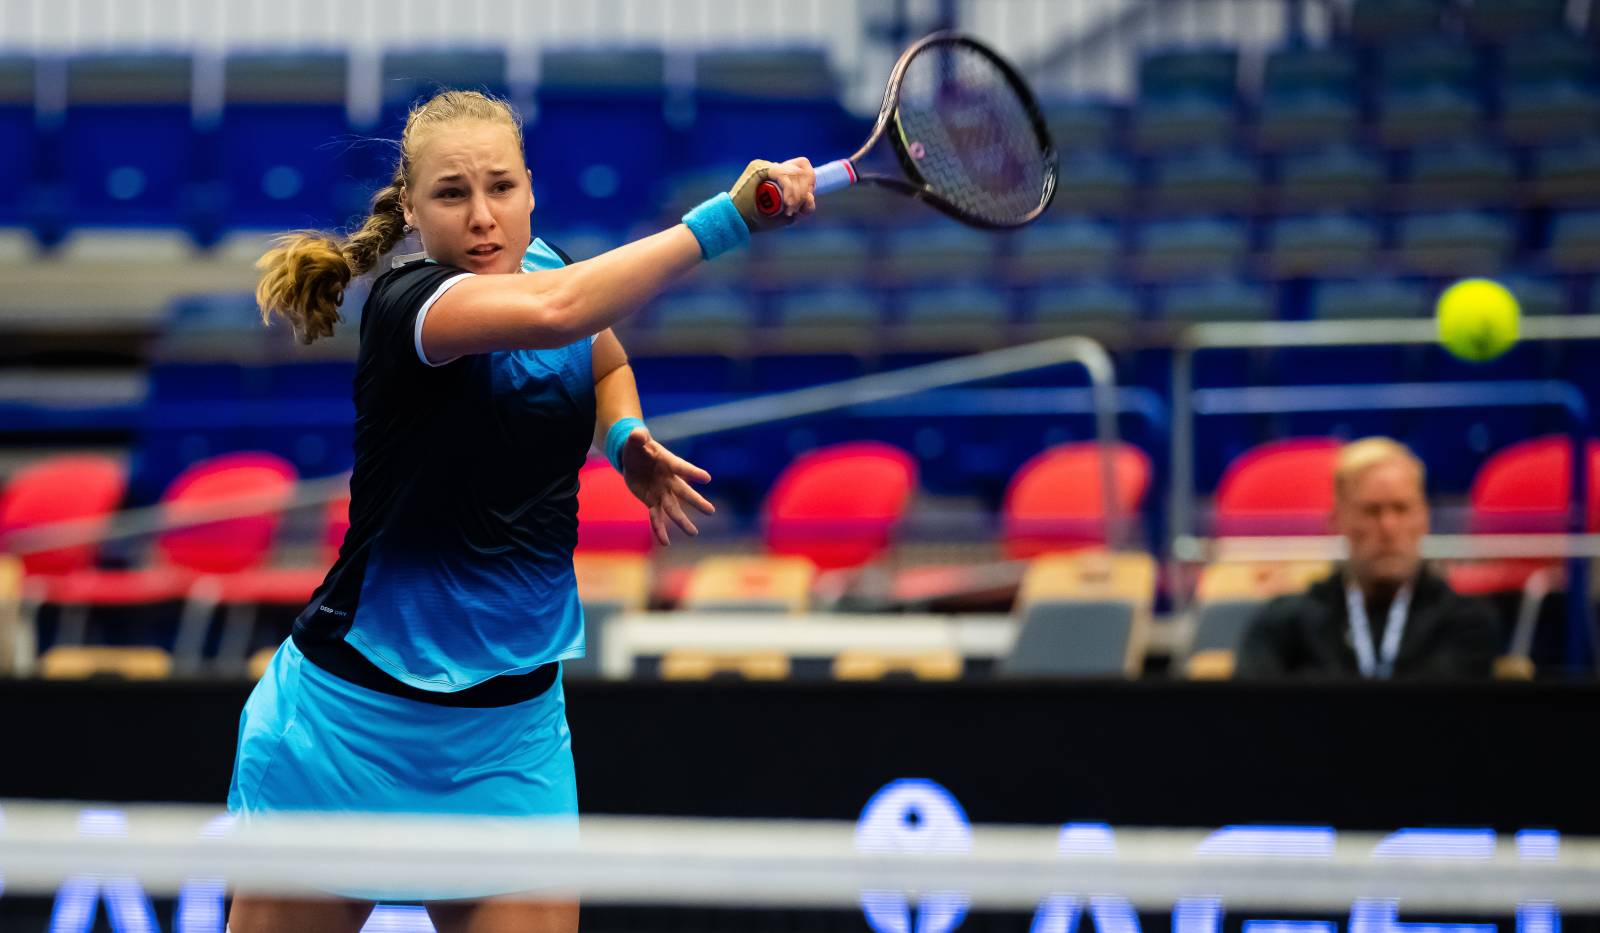 Блинкова высказалась о предстоящей игре с украинкой Свитолиной на Открытом чемпионате Франции